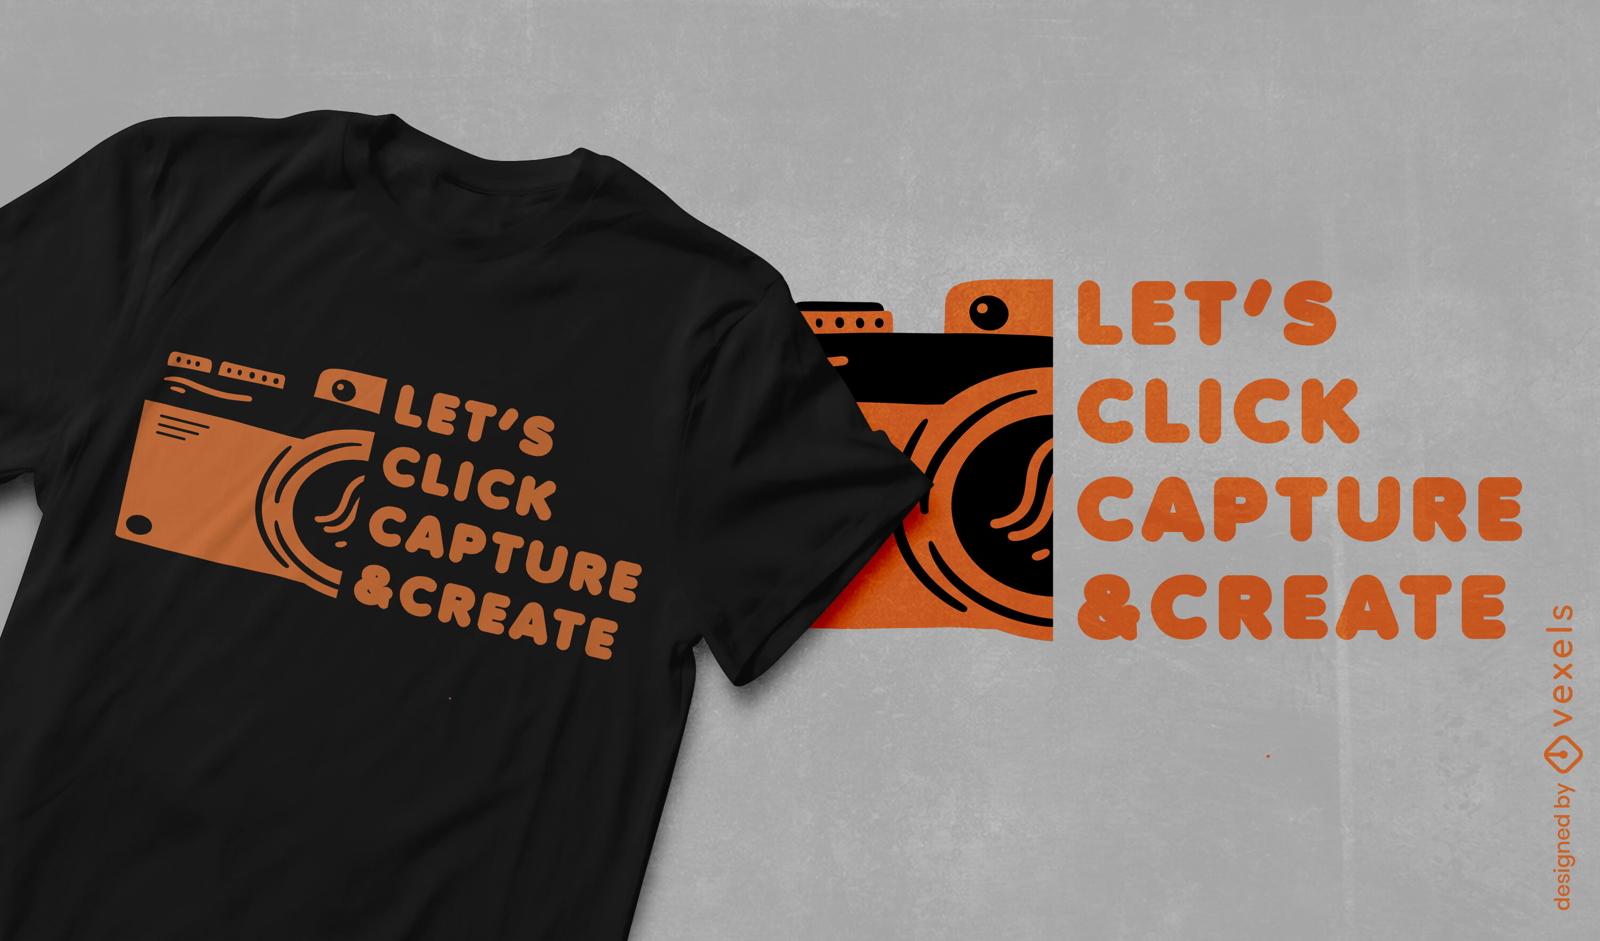 Camera quote t-shirt design